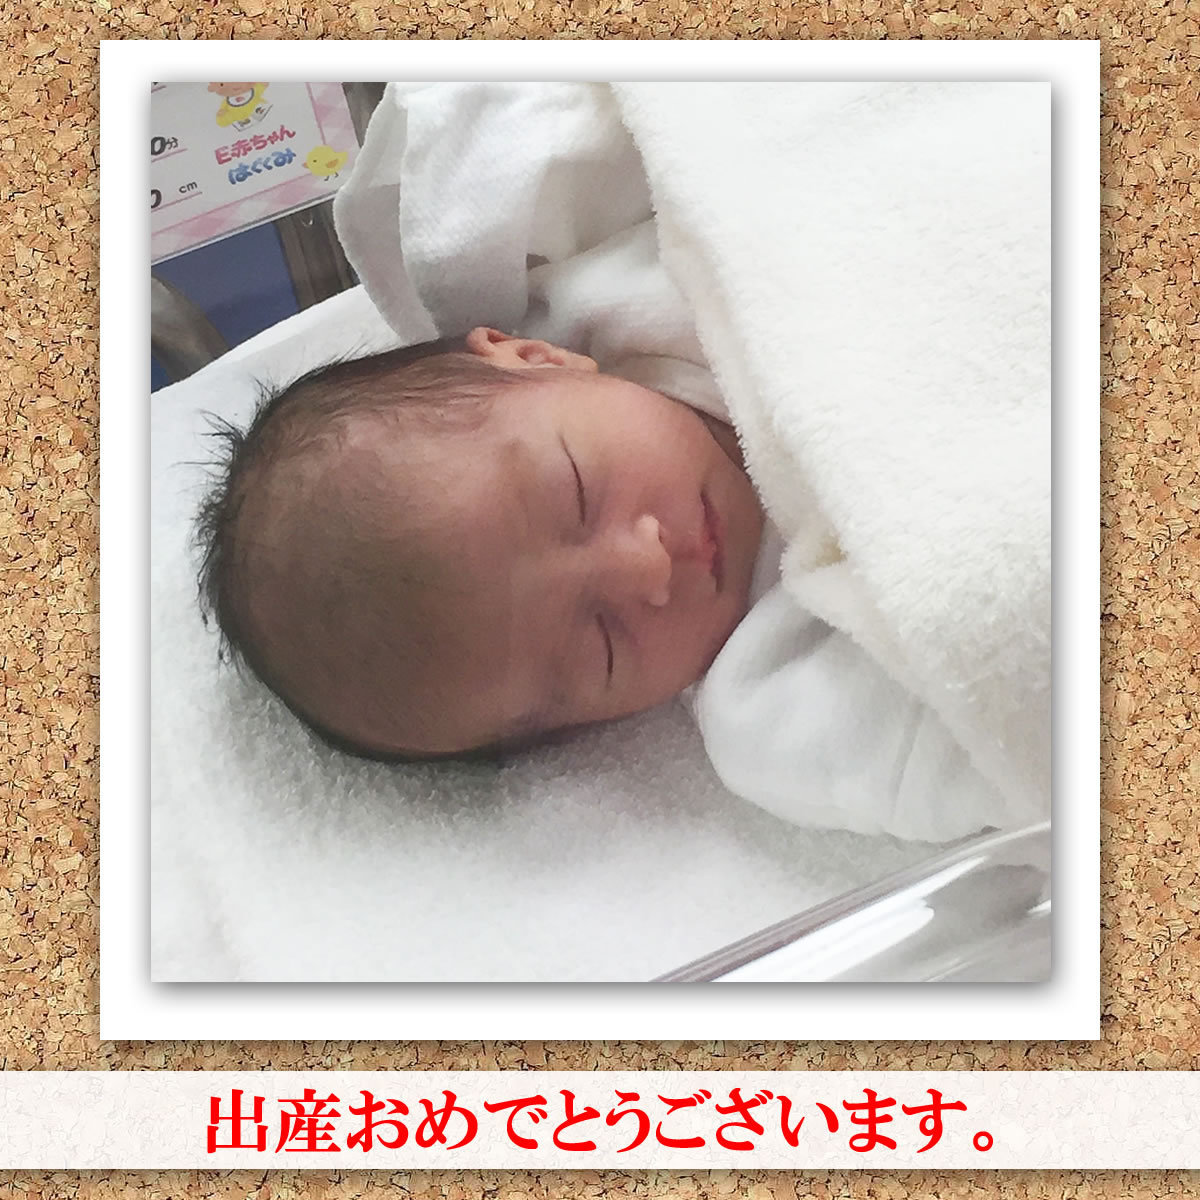 神奈川不妊治療整体センター（神奈川県川崎市）出産おめでとうございます。